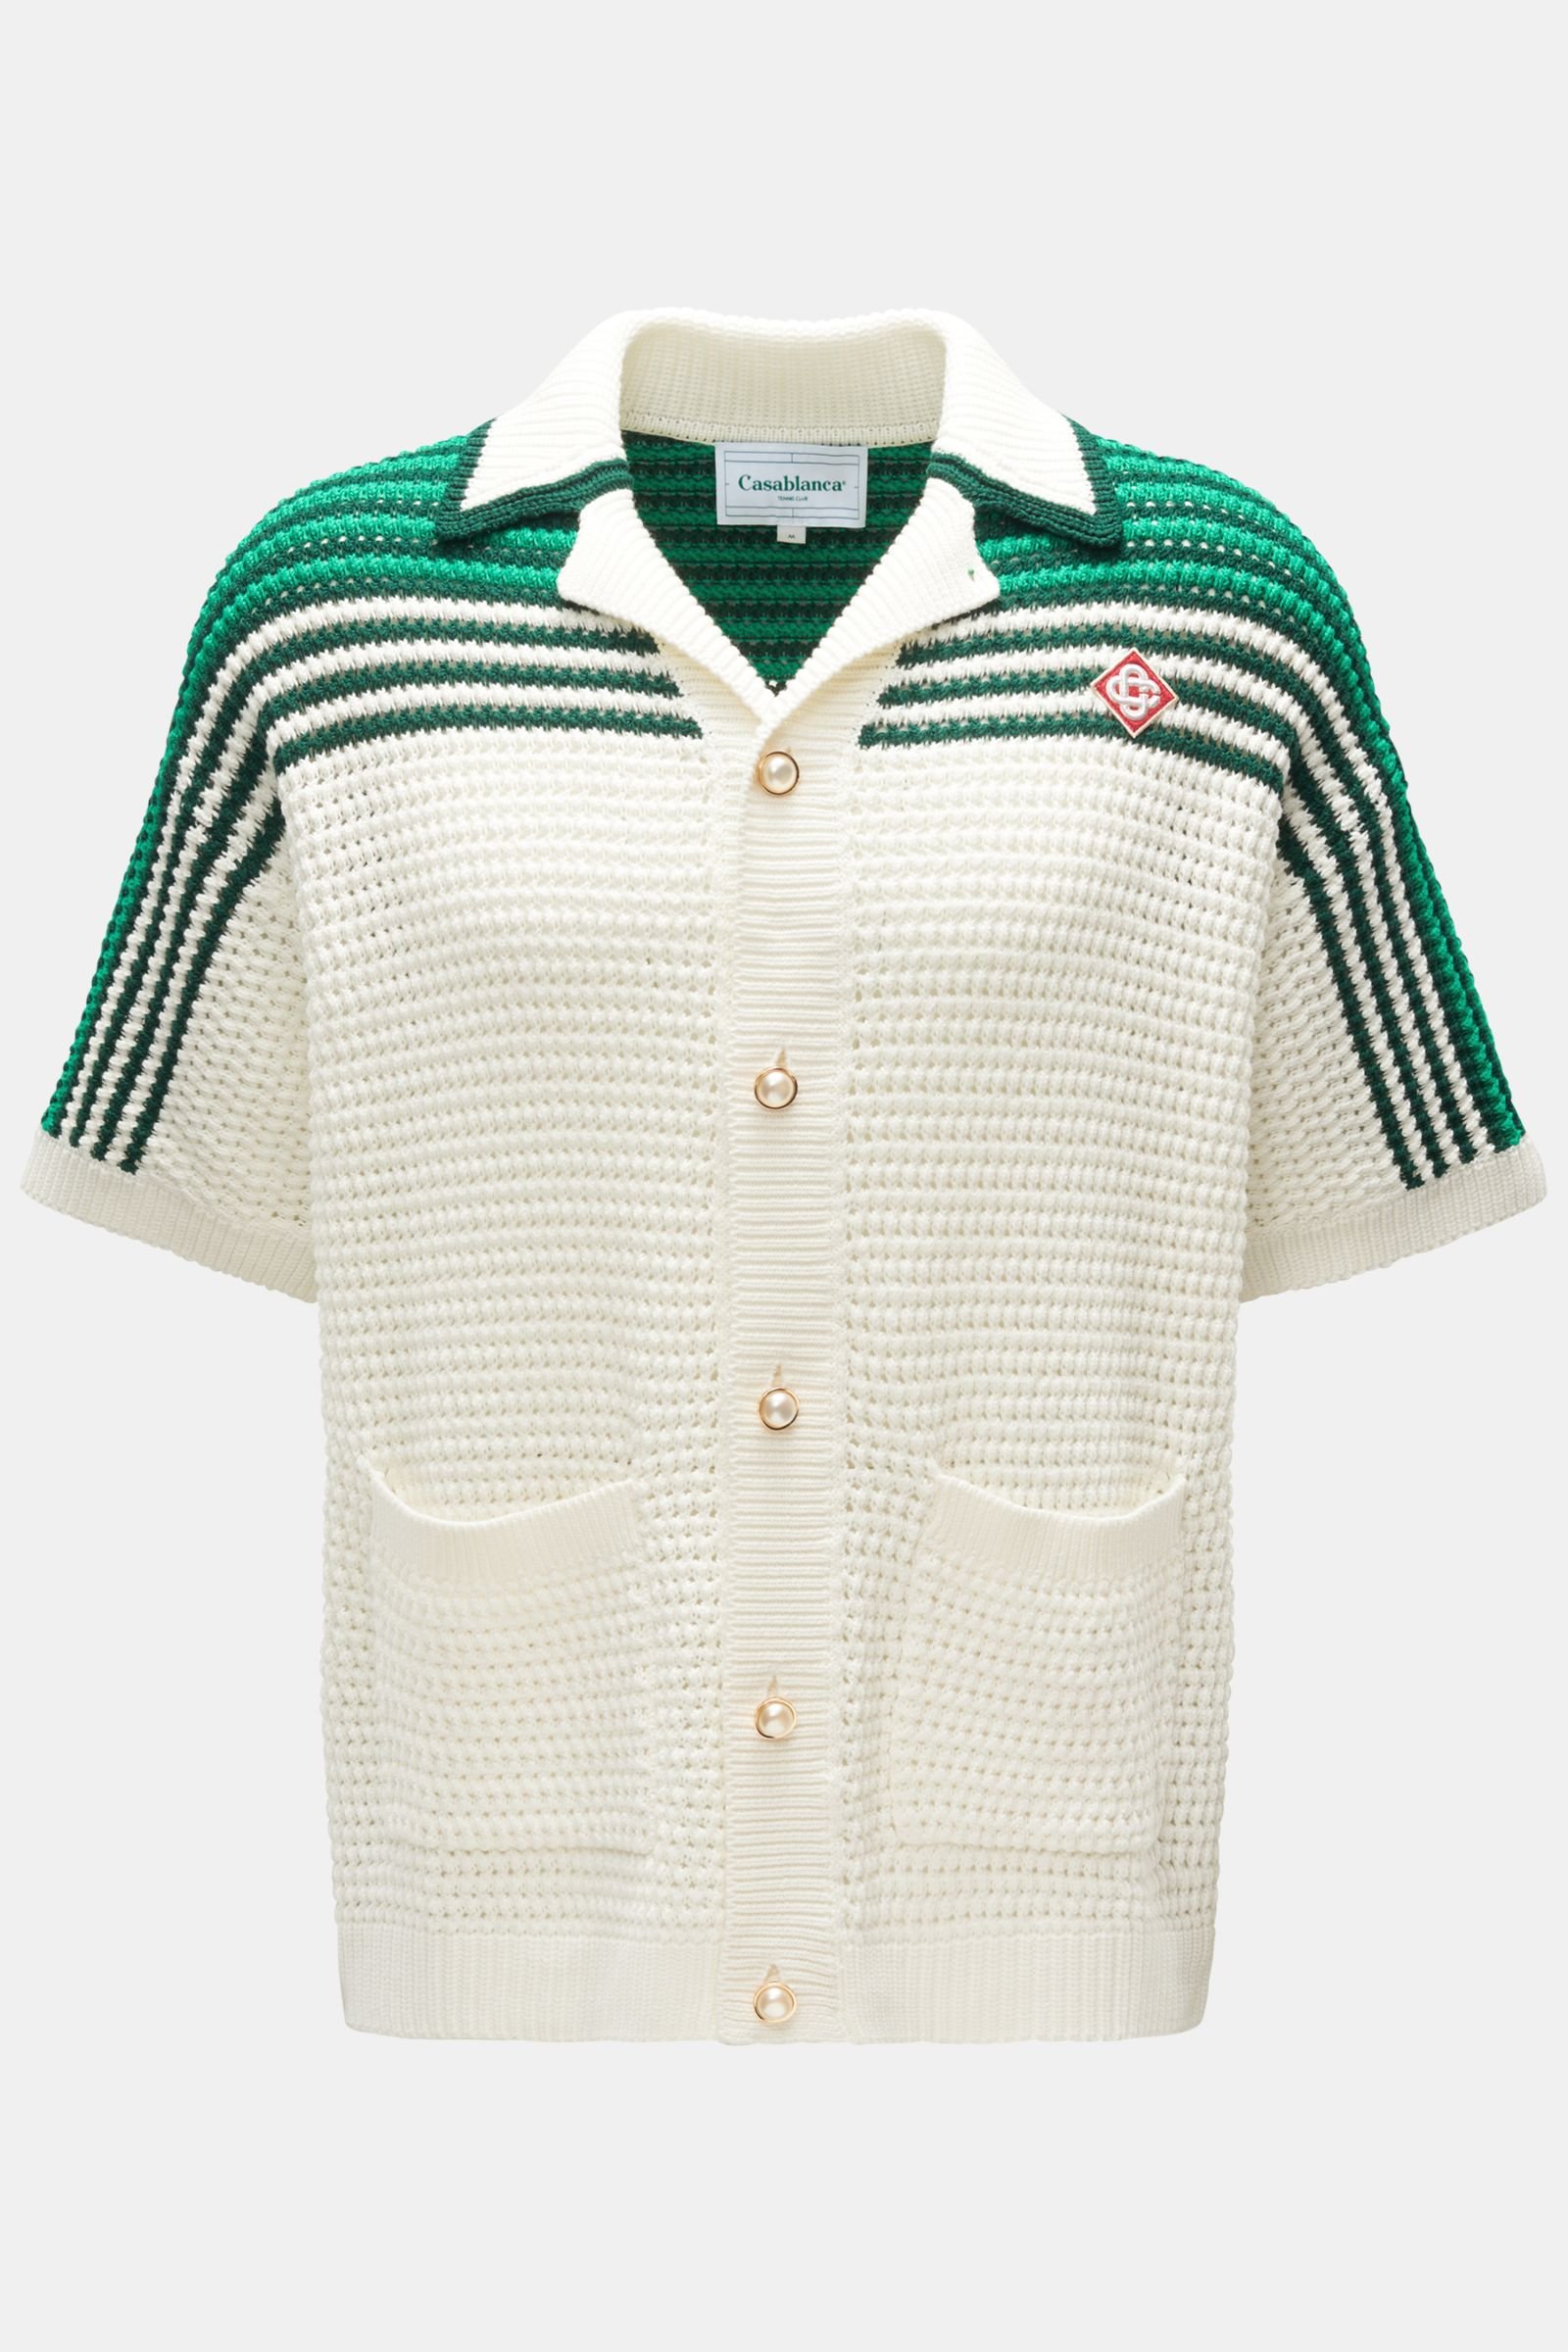 Kurzarm-Strickhemd 'Tennis Crochet Shirt' Kubanischer Kragen grün/offwhite